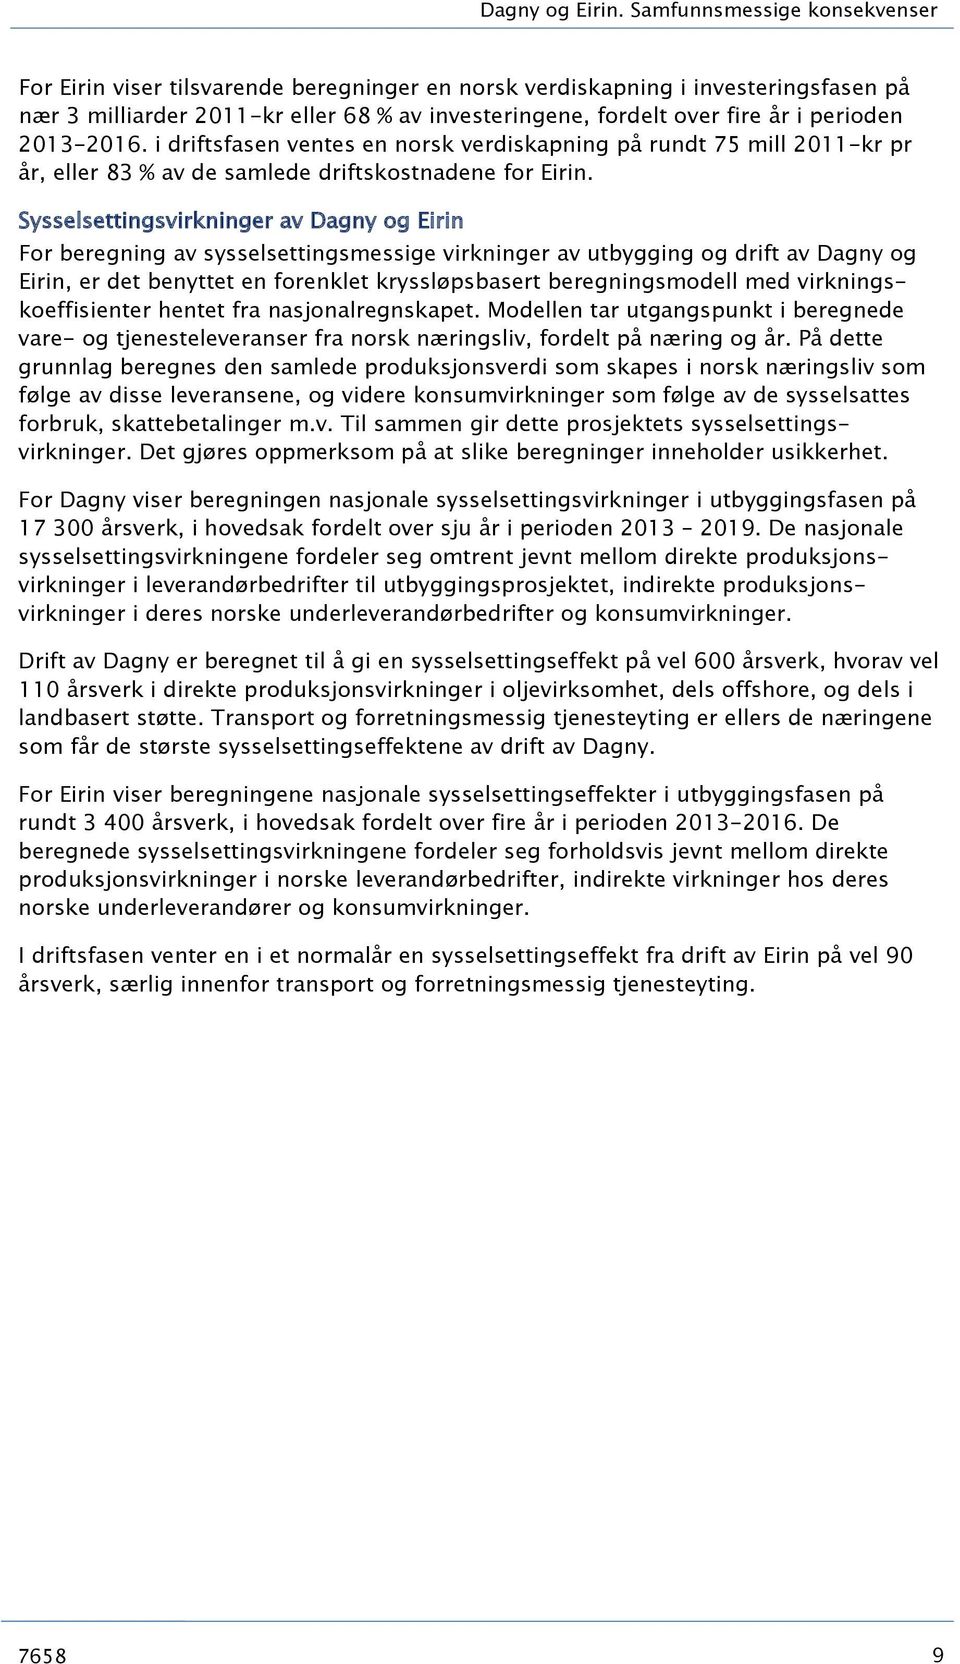 perioden 2013-2016. i driftsfasen ventes en norsk verdiskapning på rundt 75 mill 2011-kr pr år, eller 83 % av de samlede driftskostnadene for Eirin.